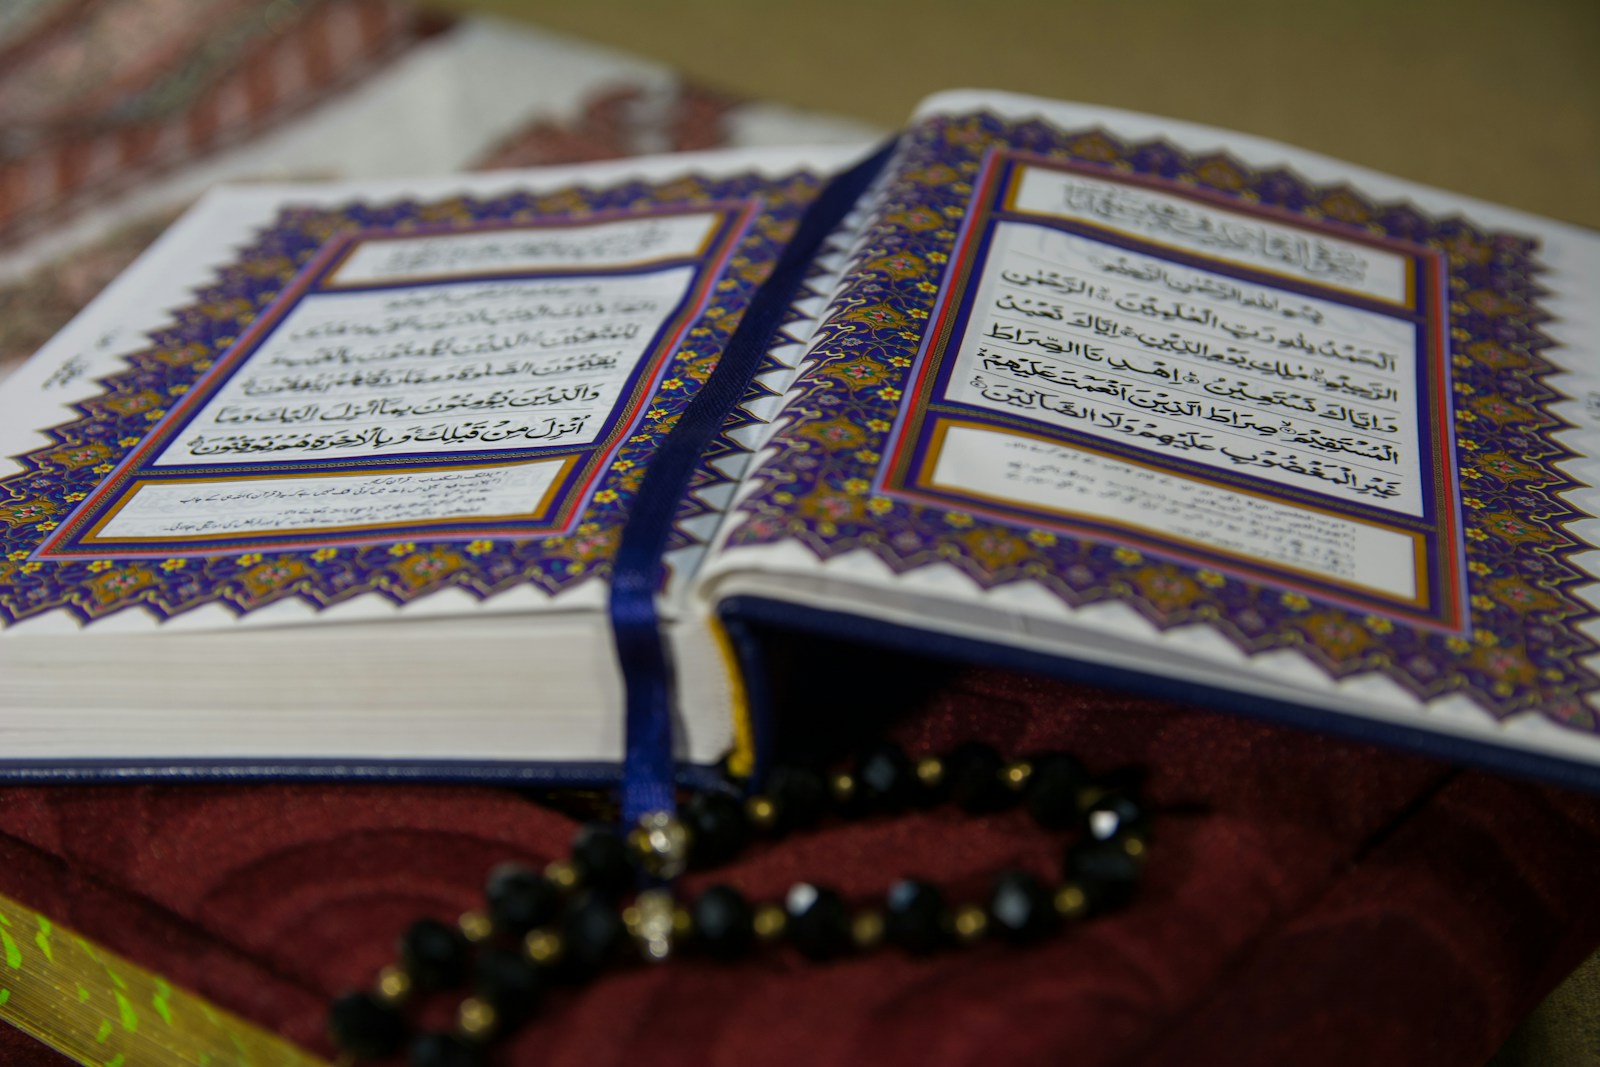 L’Approche Culturelle dans le Coran